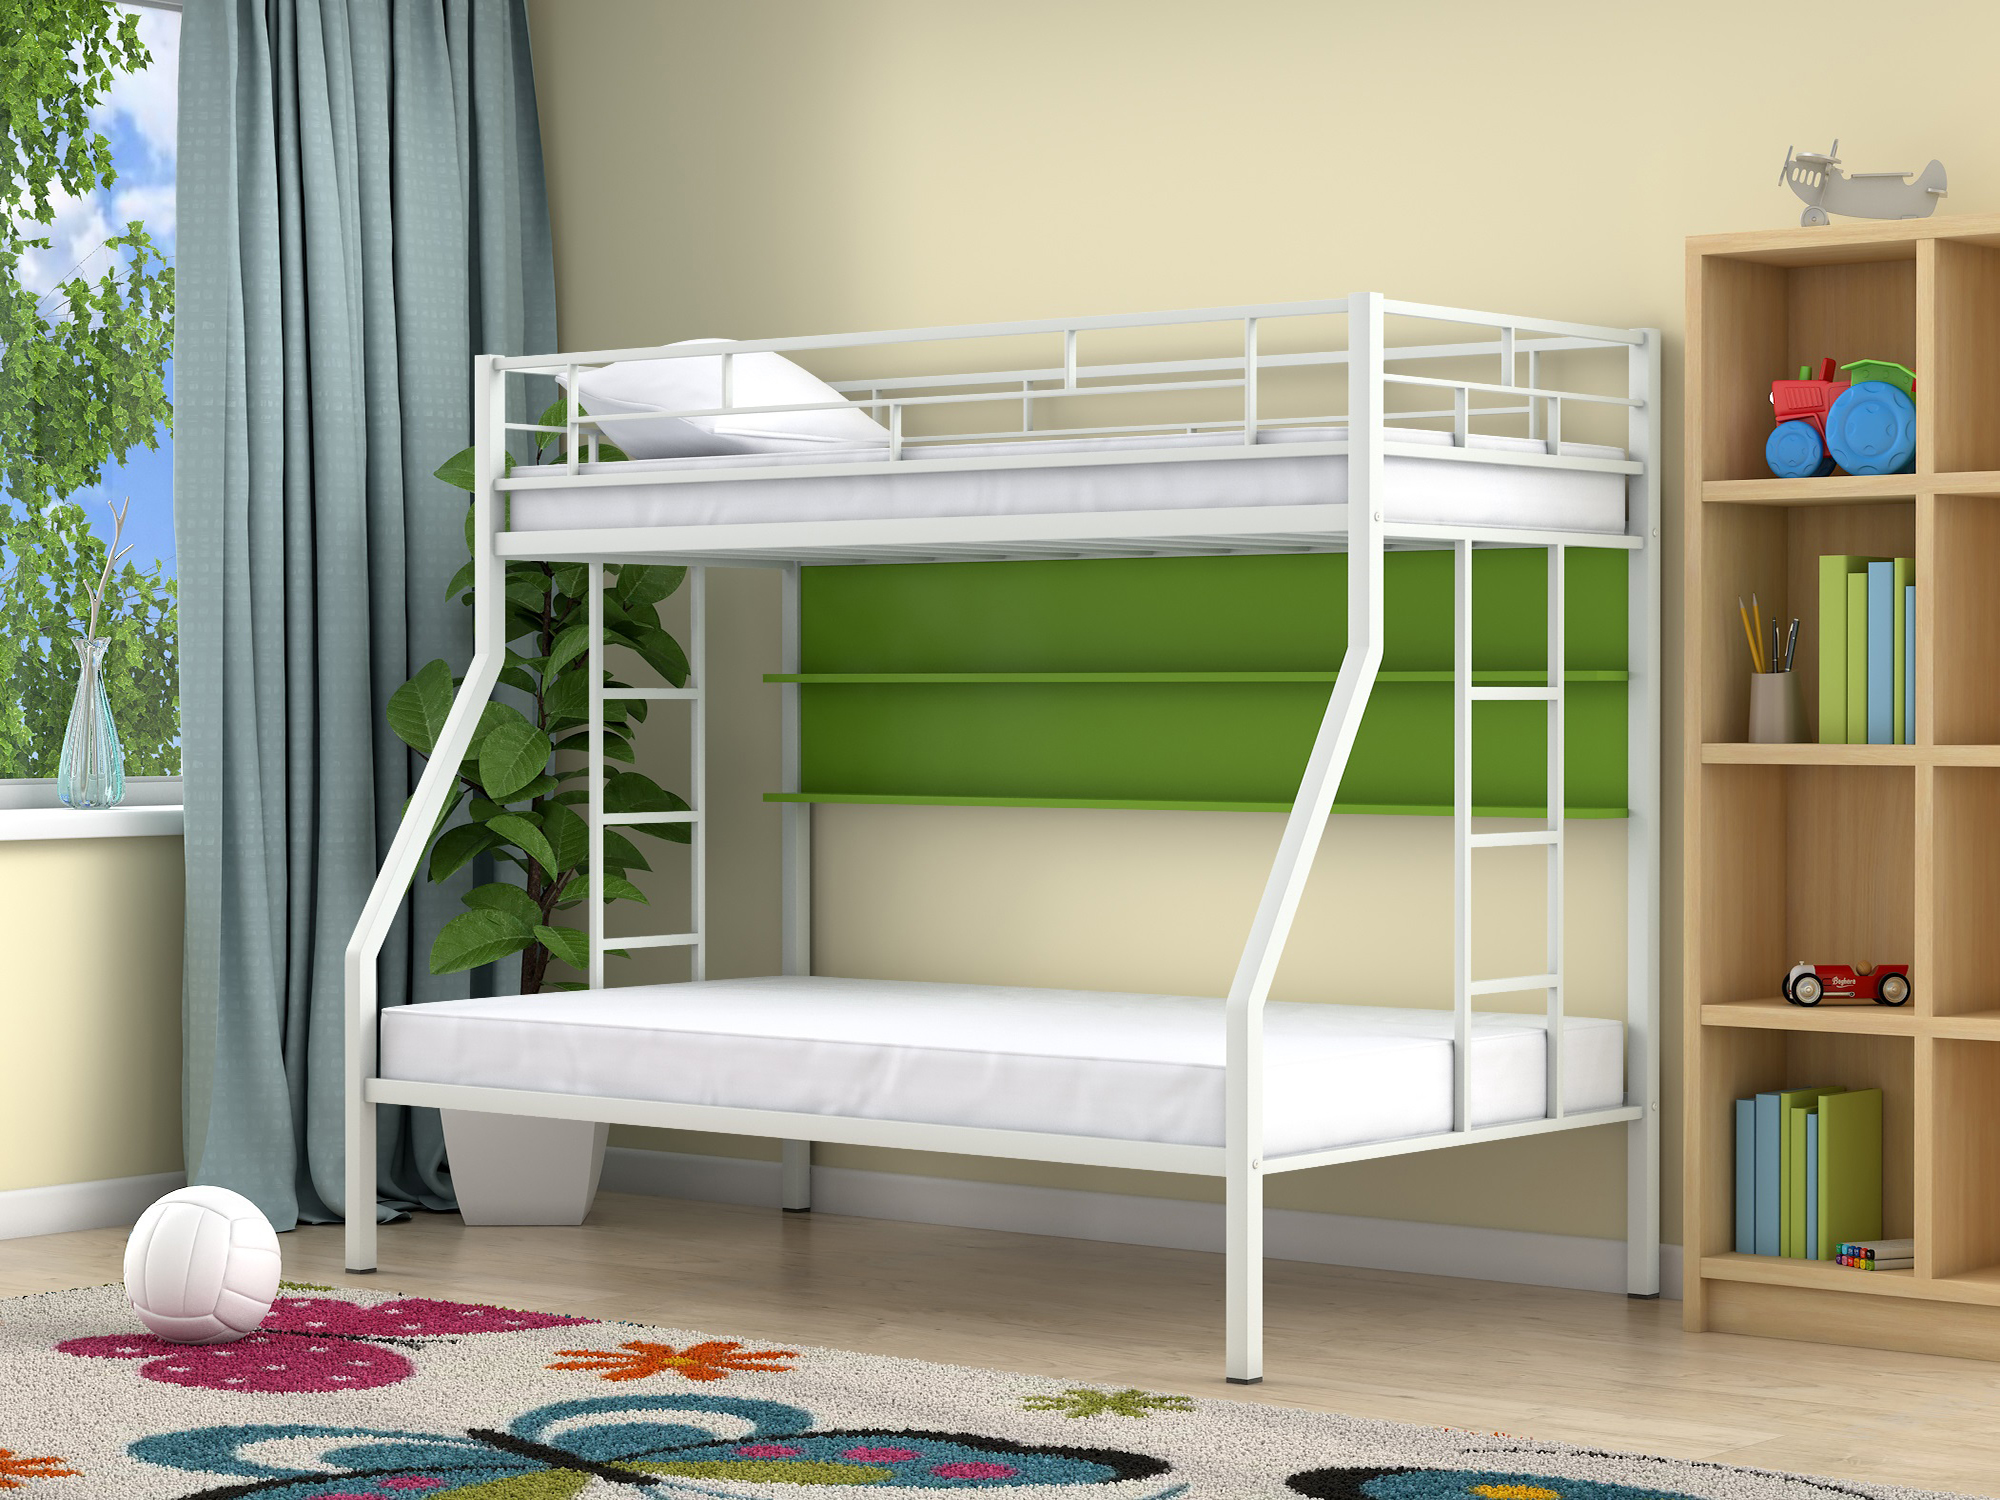 Двухъярусная кровать Милан (90х190/120х190) Зеленый, , Белый, ЛДСП, Металл